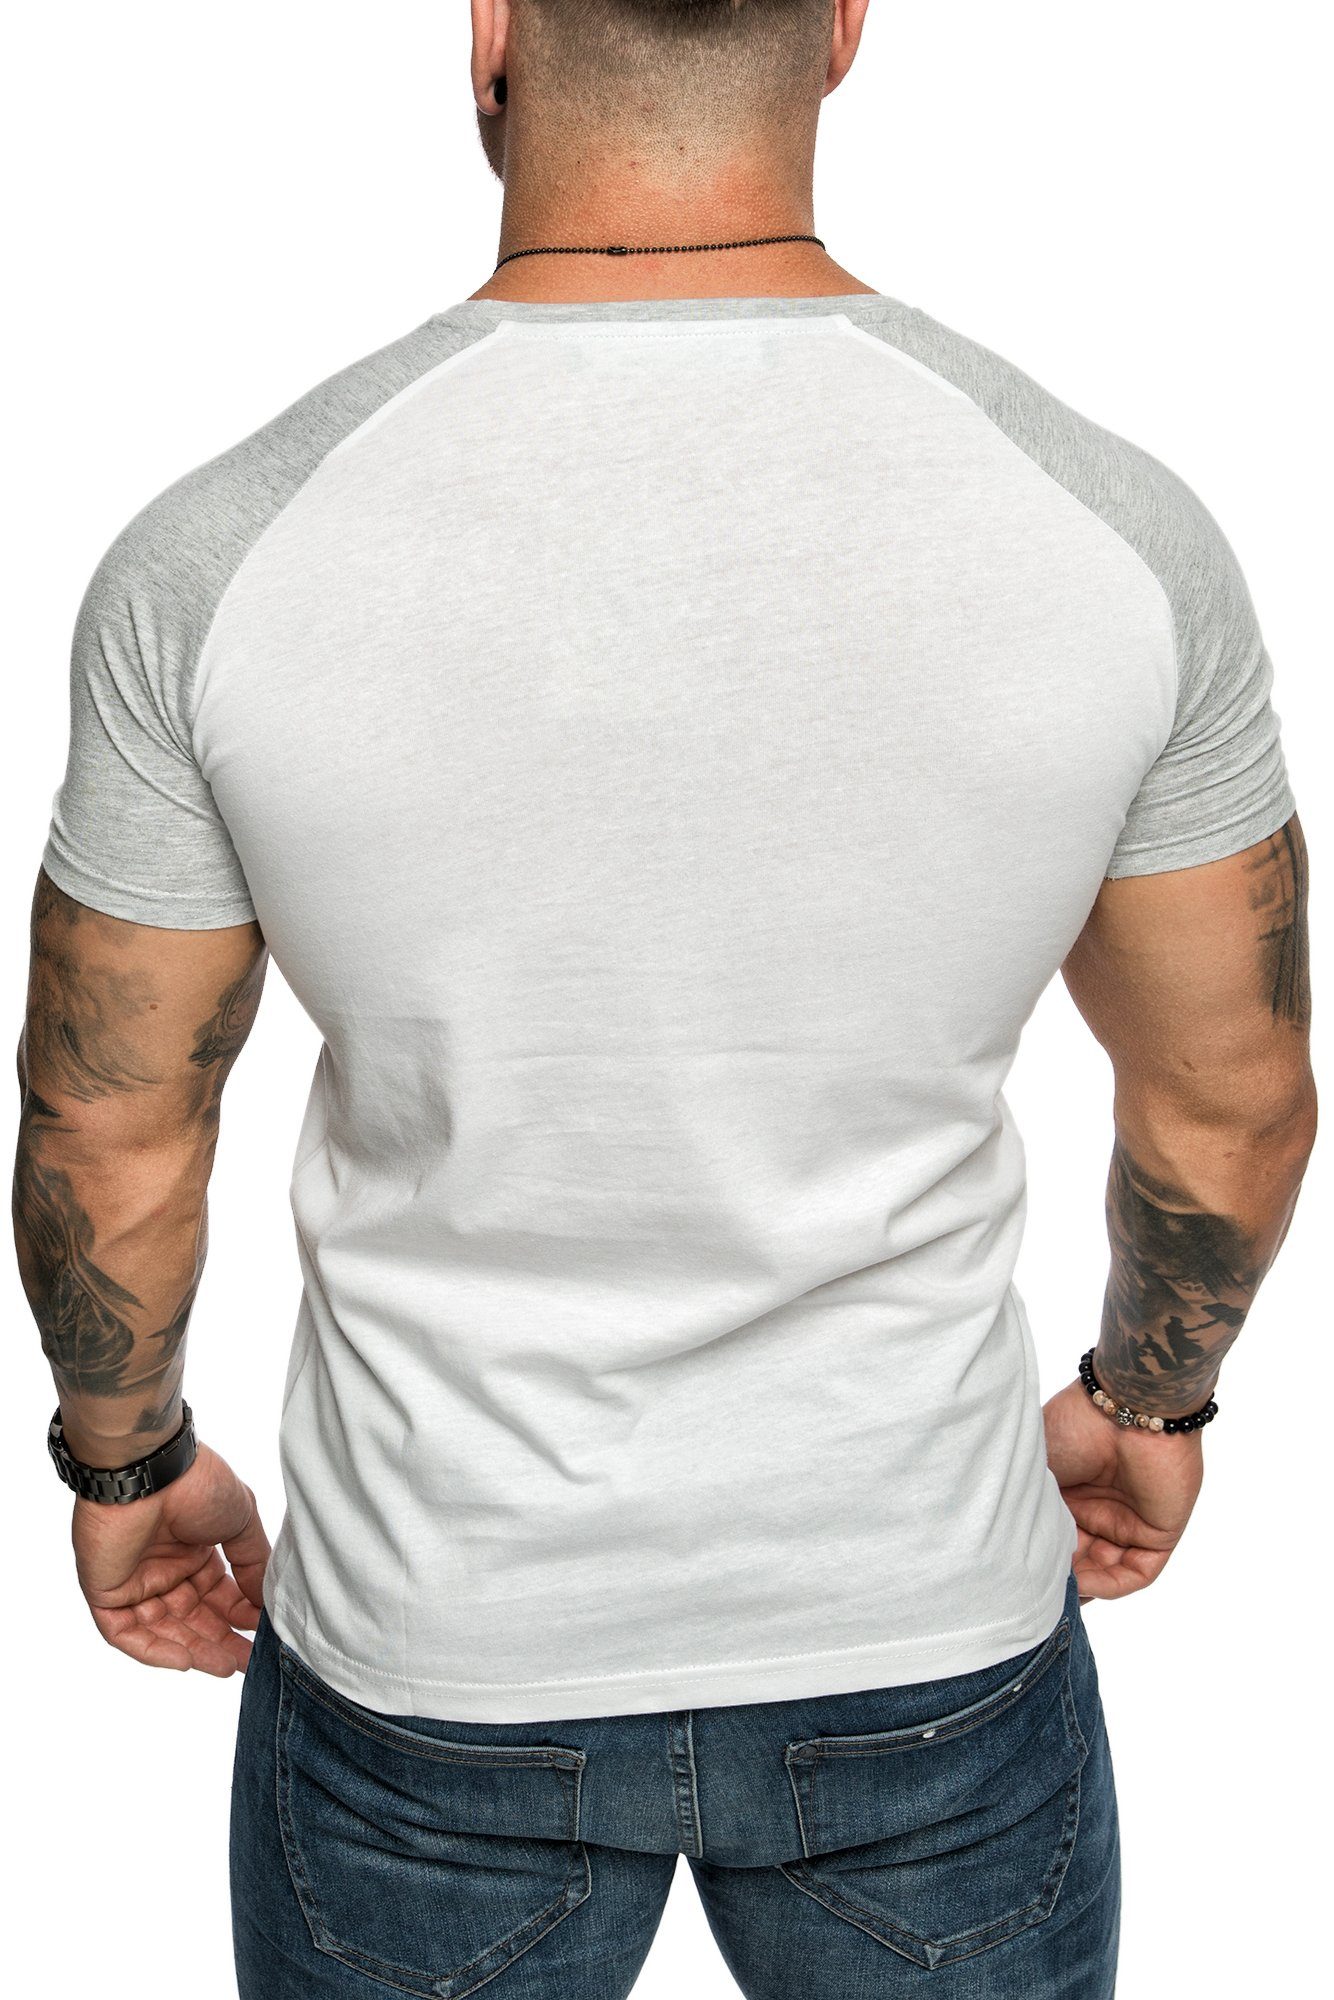 Weiß/Grau T-Shirt Raglan Shirt SALEM Rundhalsausschnitt Rundhalsausschnitt Amaci&Sons Herren Basic mit Basic T-Shirt Raglan mit